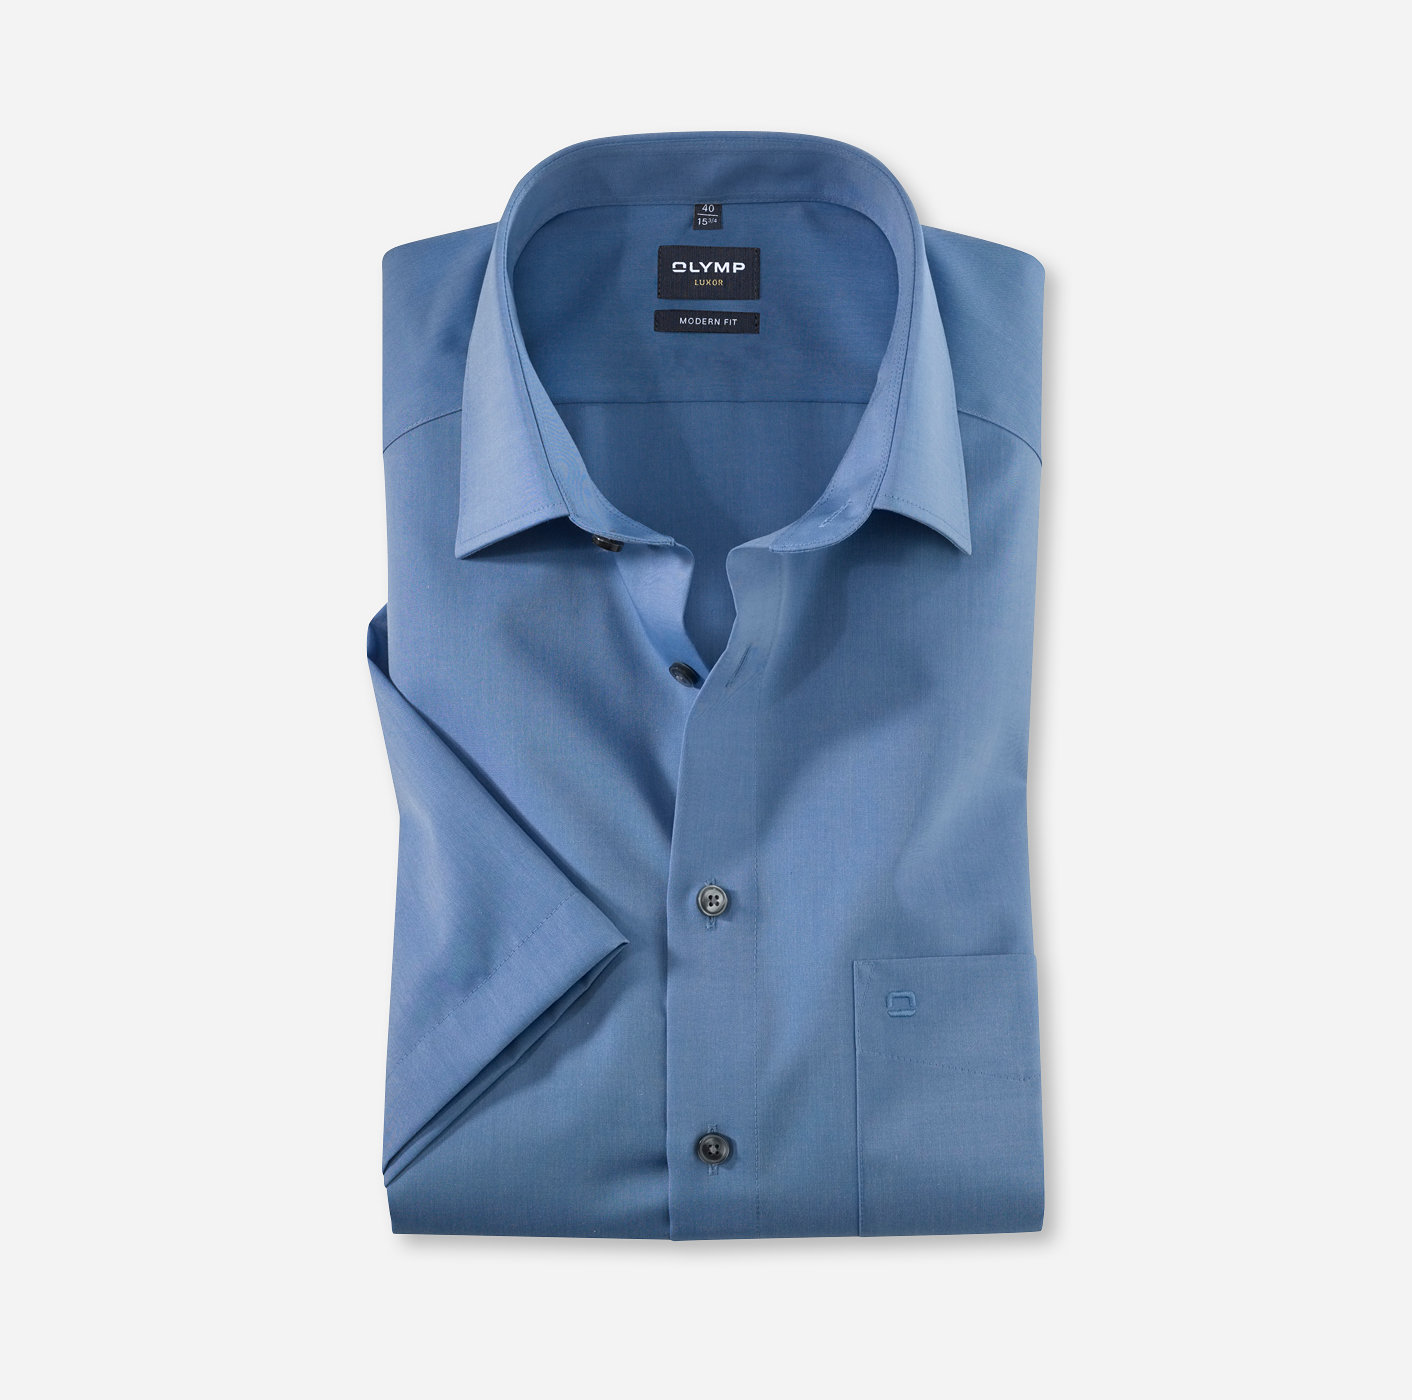 OLYMP Luxor, modern fit, Business shirt, New Kent, Bleu